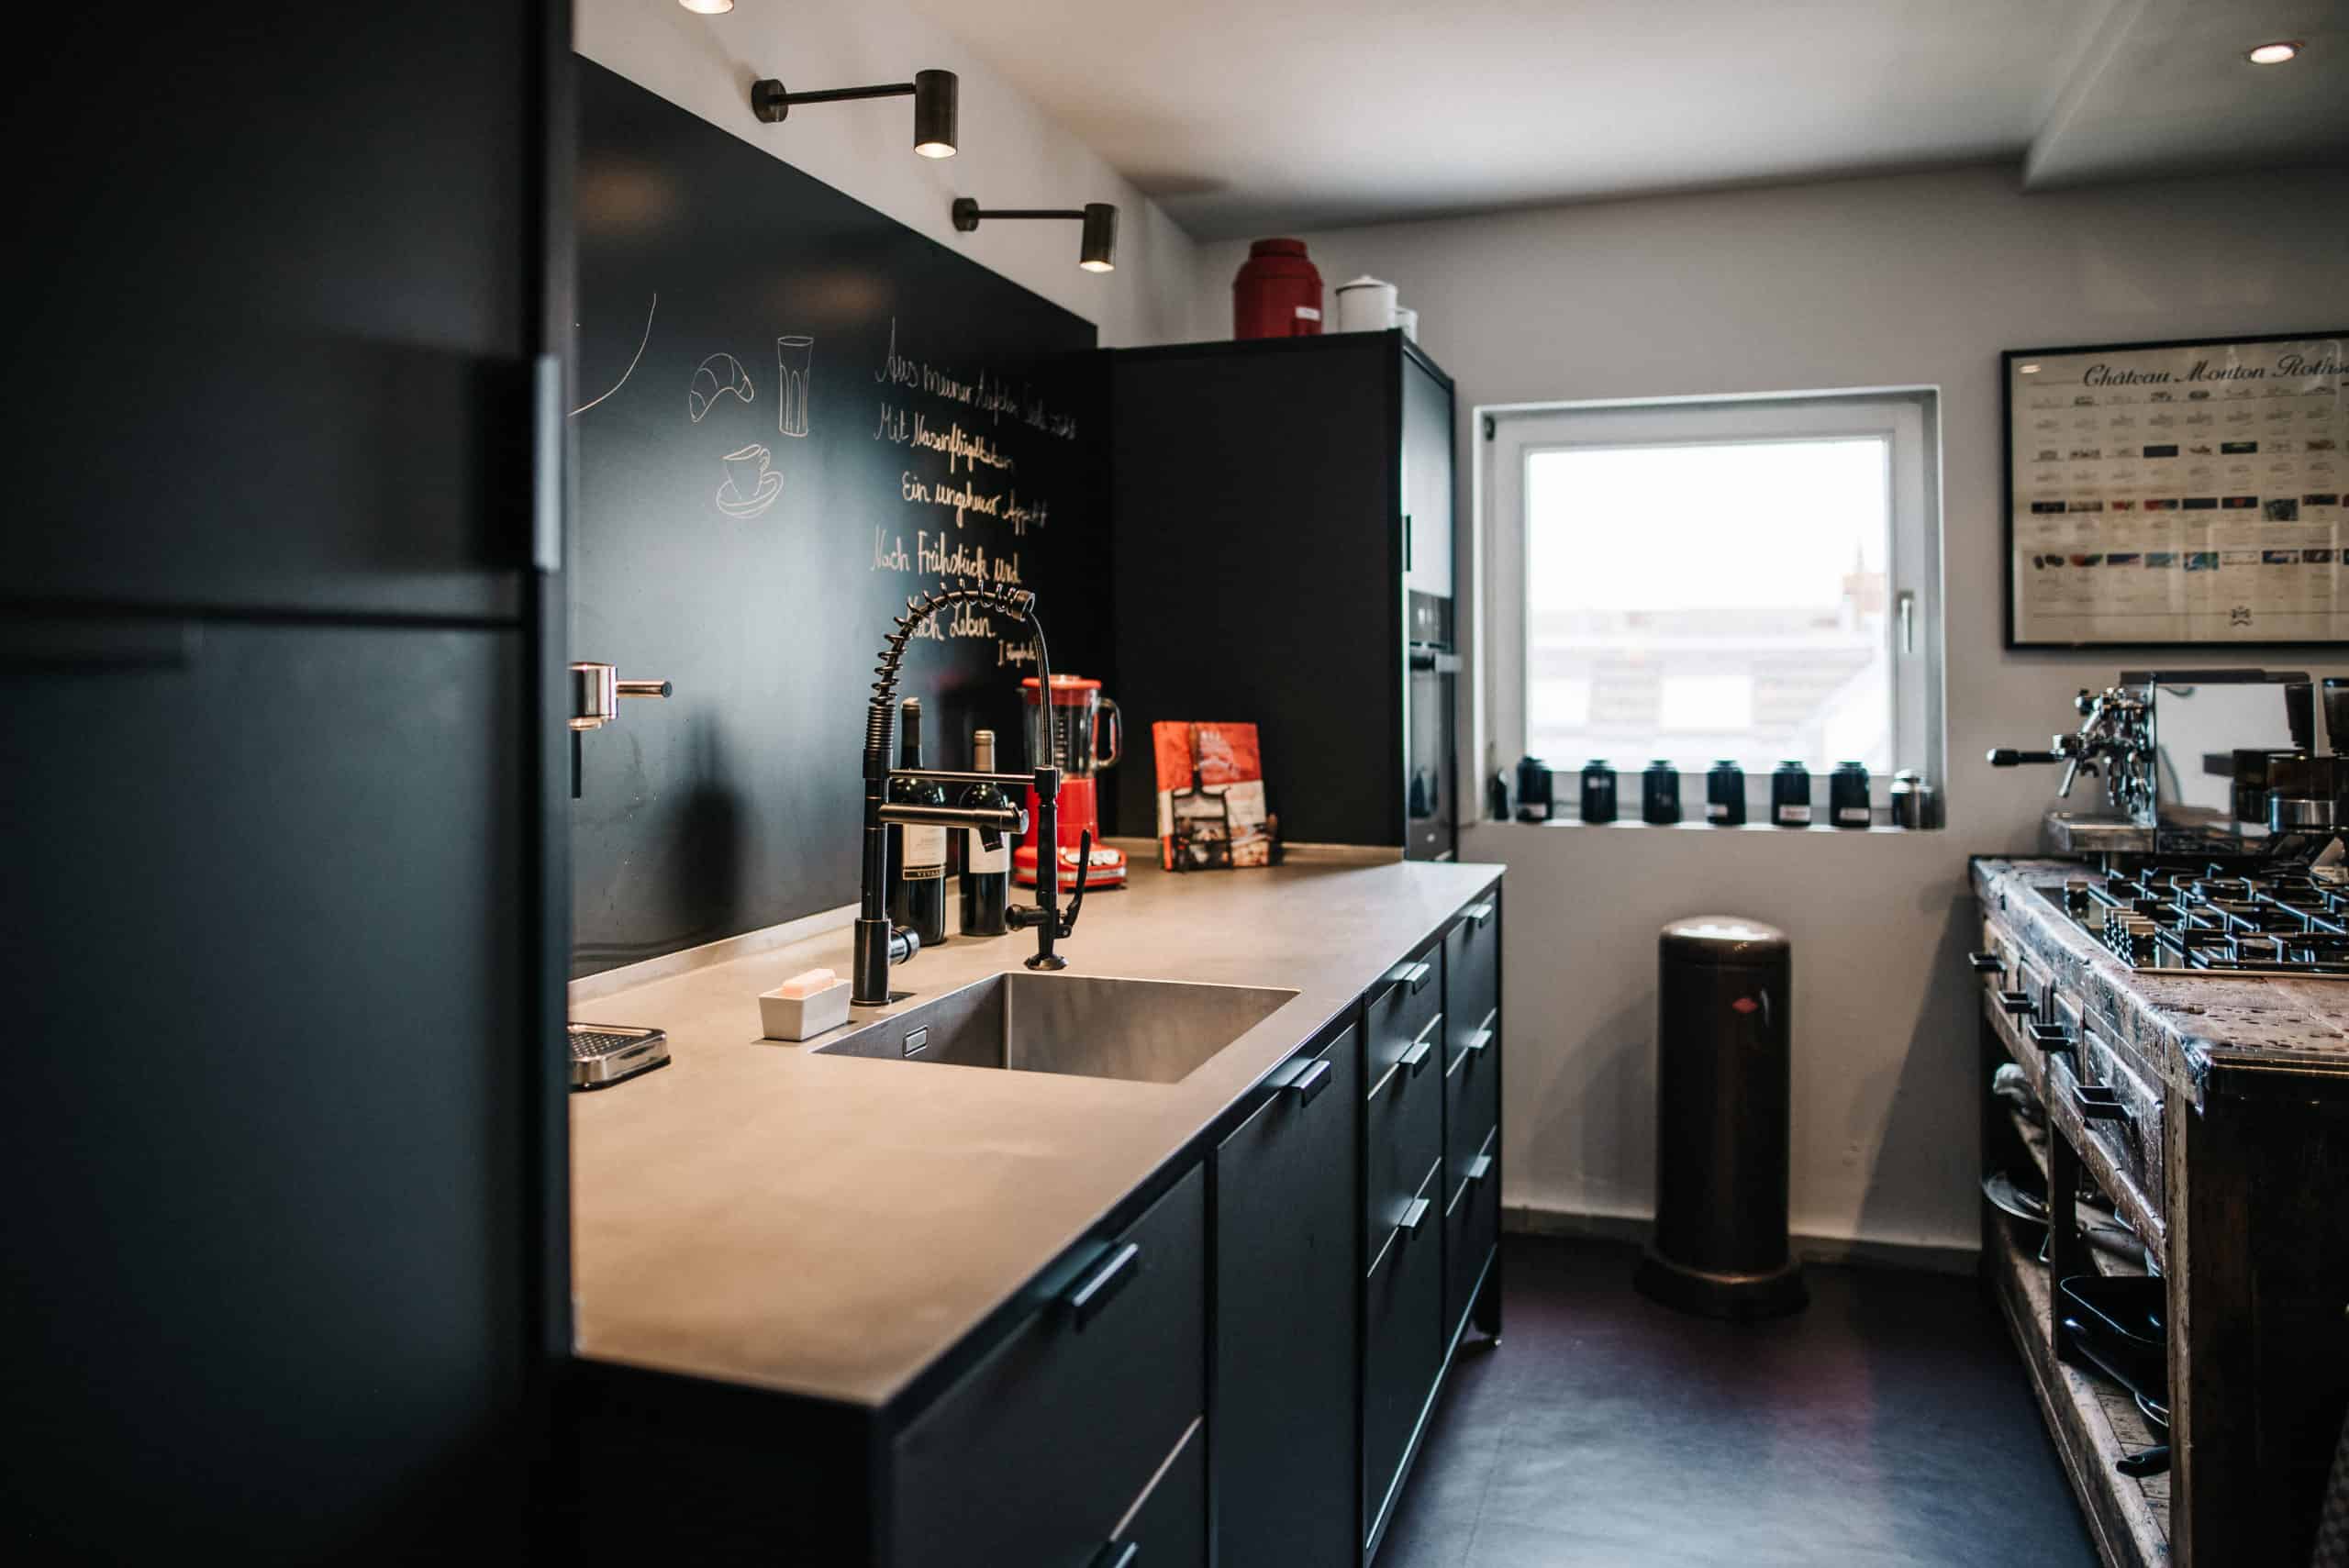 Kochbereich einer Küche im urbanen Vintage-Look. Eine schwarze Küchenzeile, Vintageobjekte und kleine, rote Farbakzente verleihen dem Ganzen einen französischen Touch.